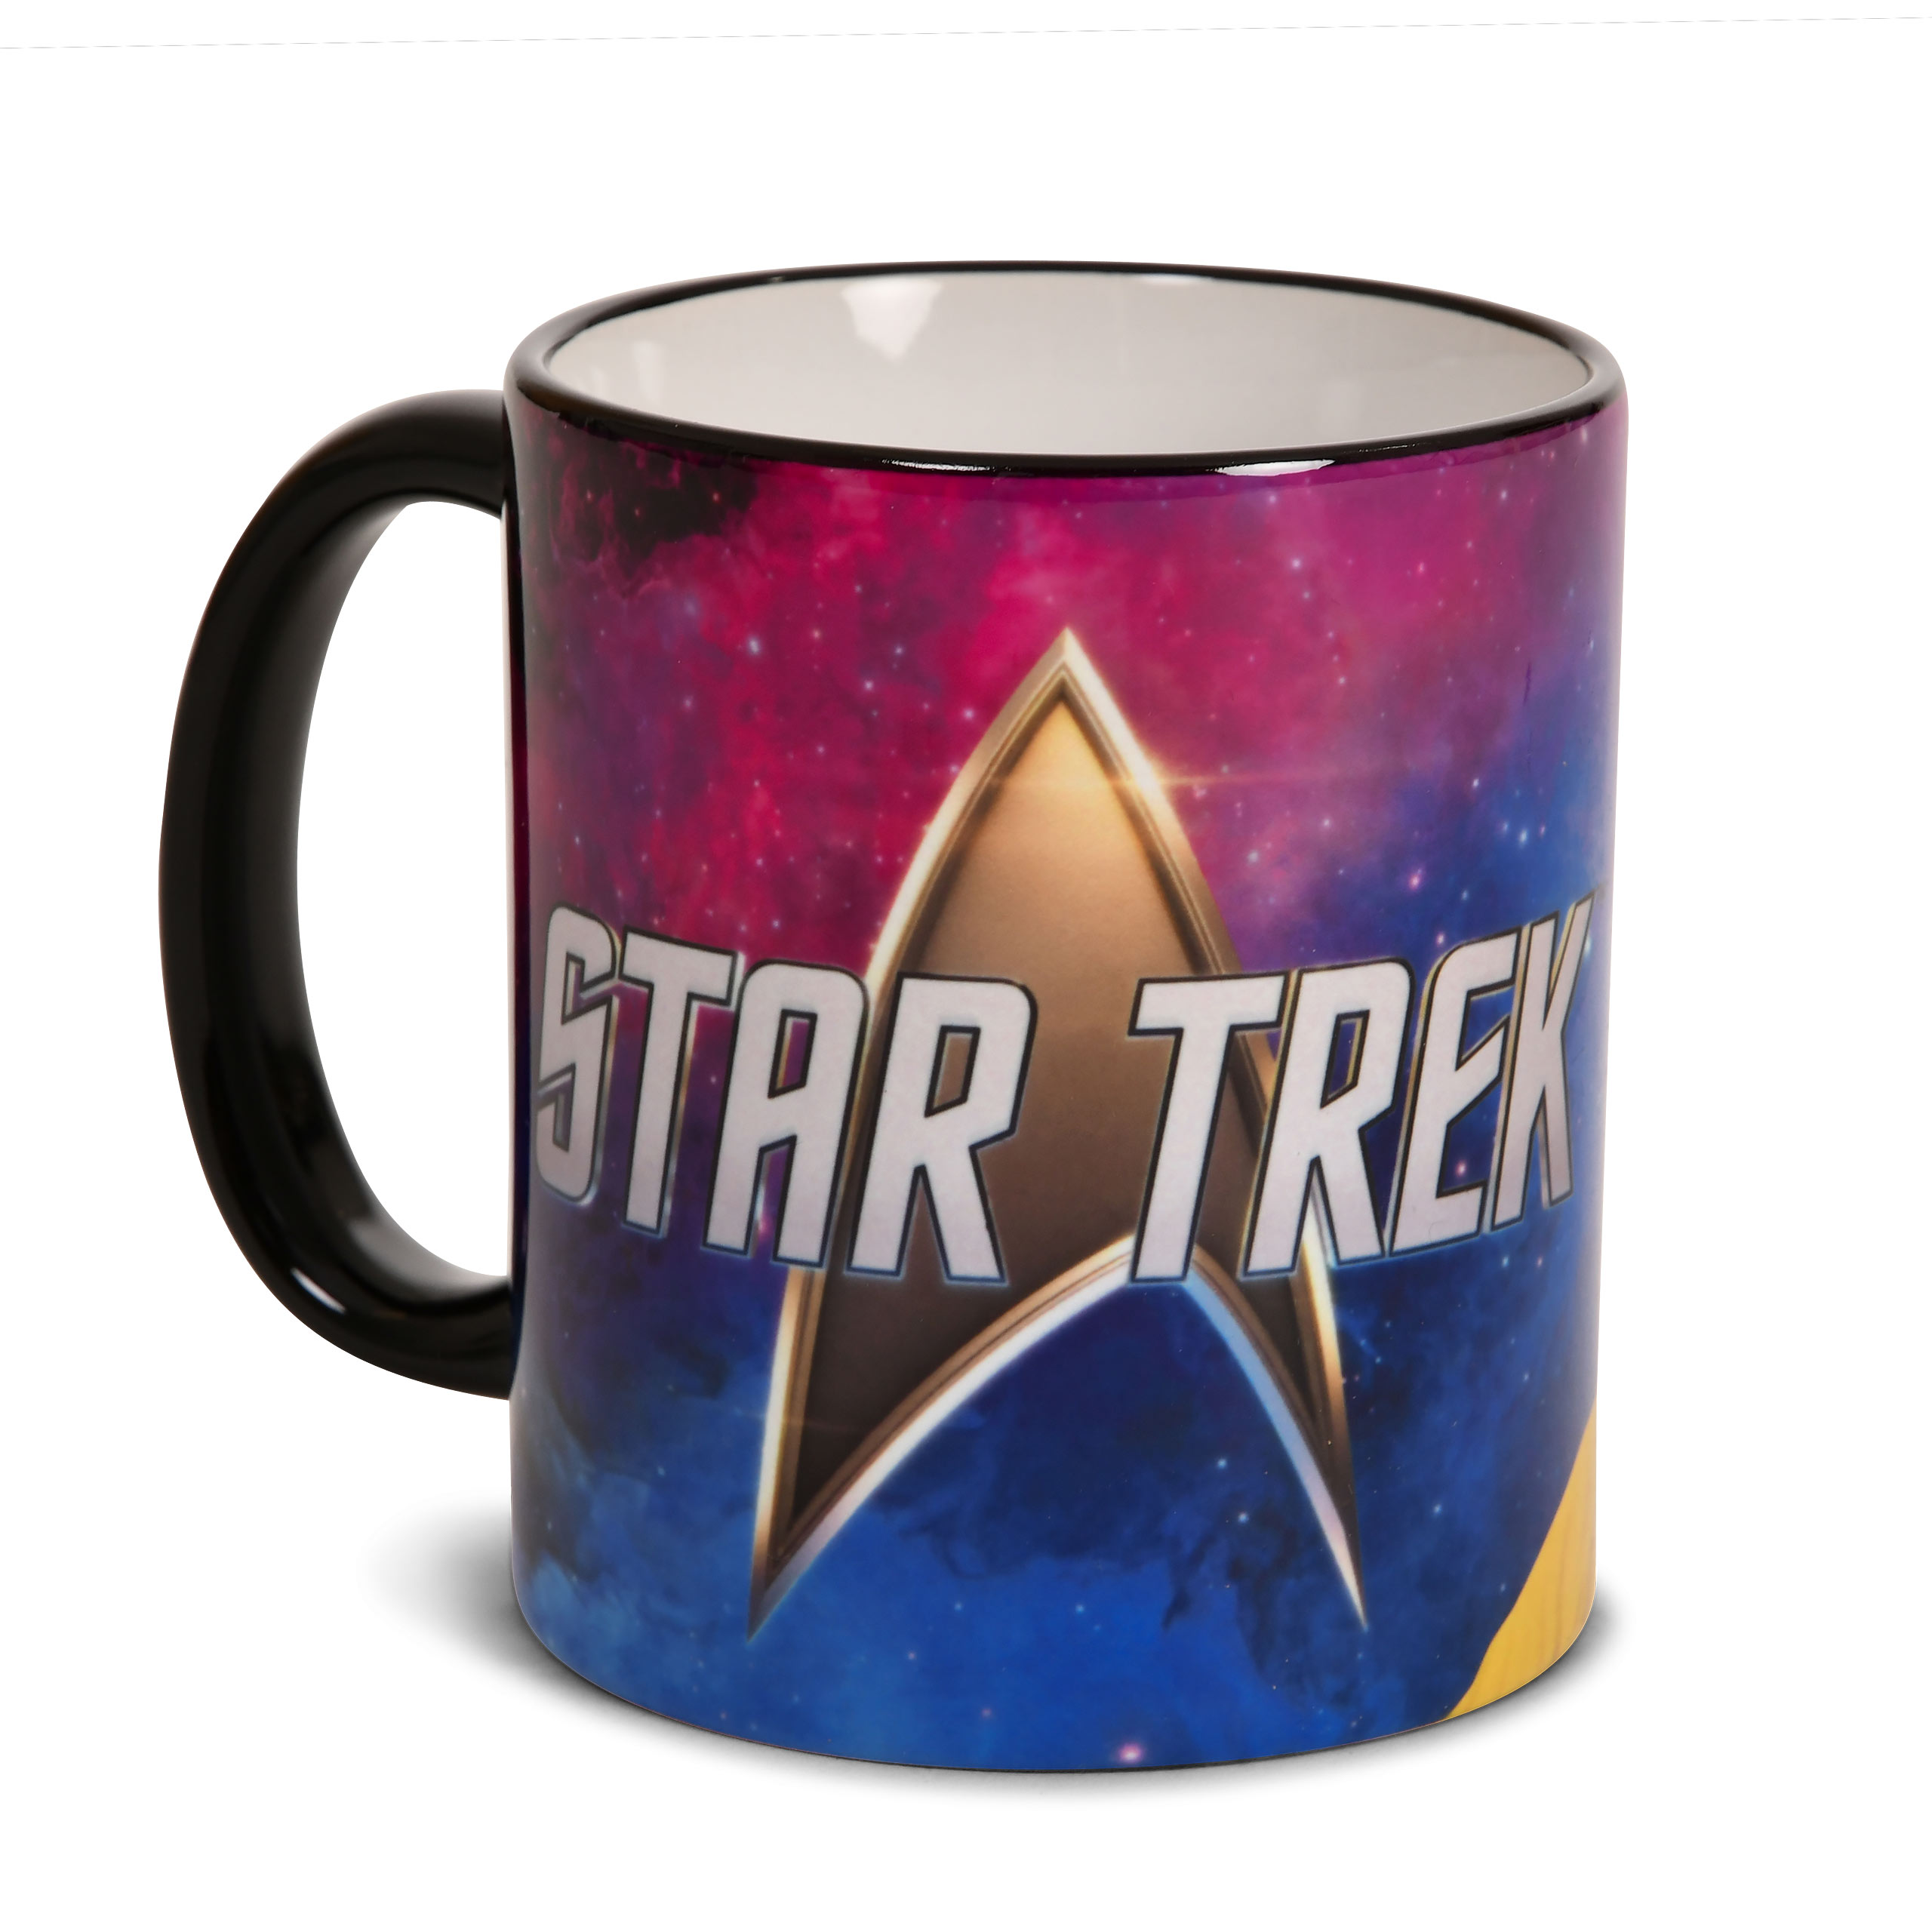 Star Trek Enterprise Tasse limiterte Auflage